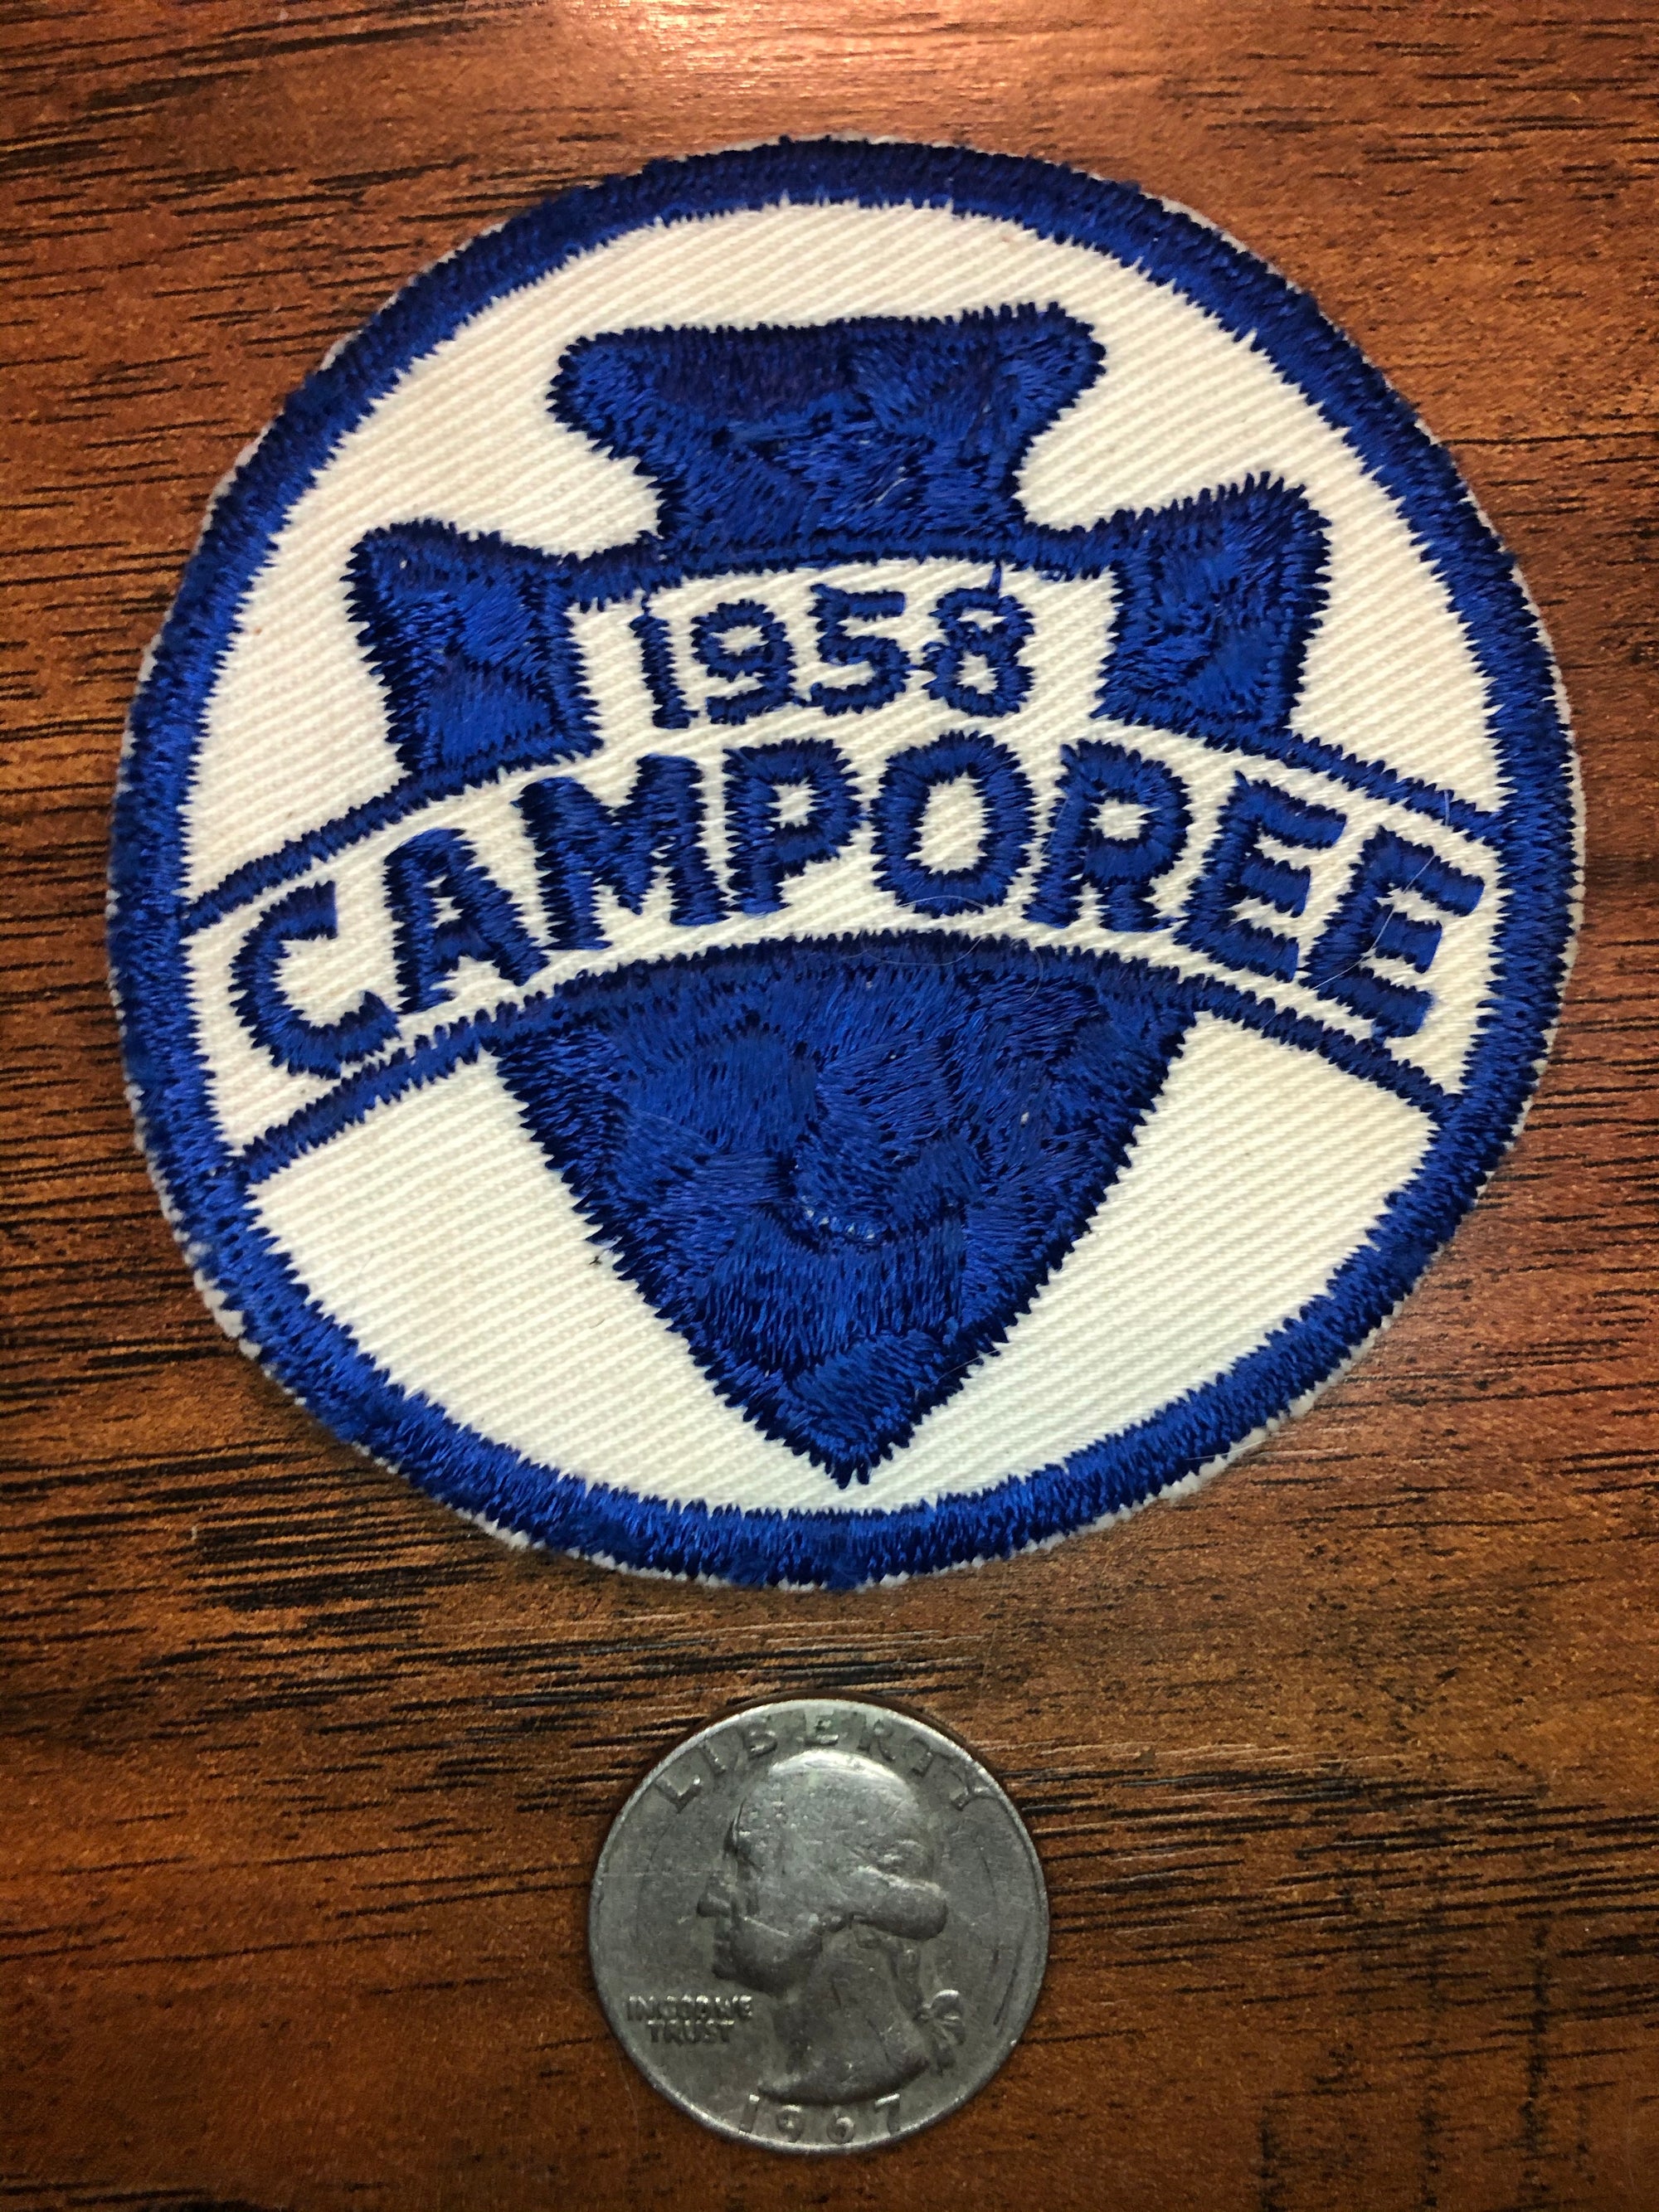 Vintage 1958 Camporee